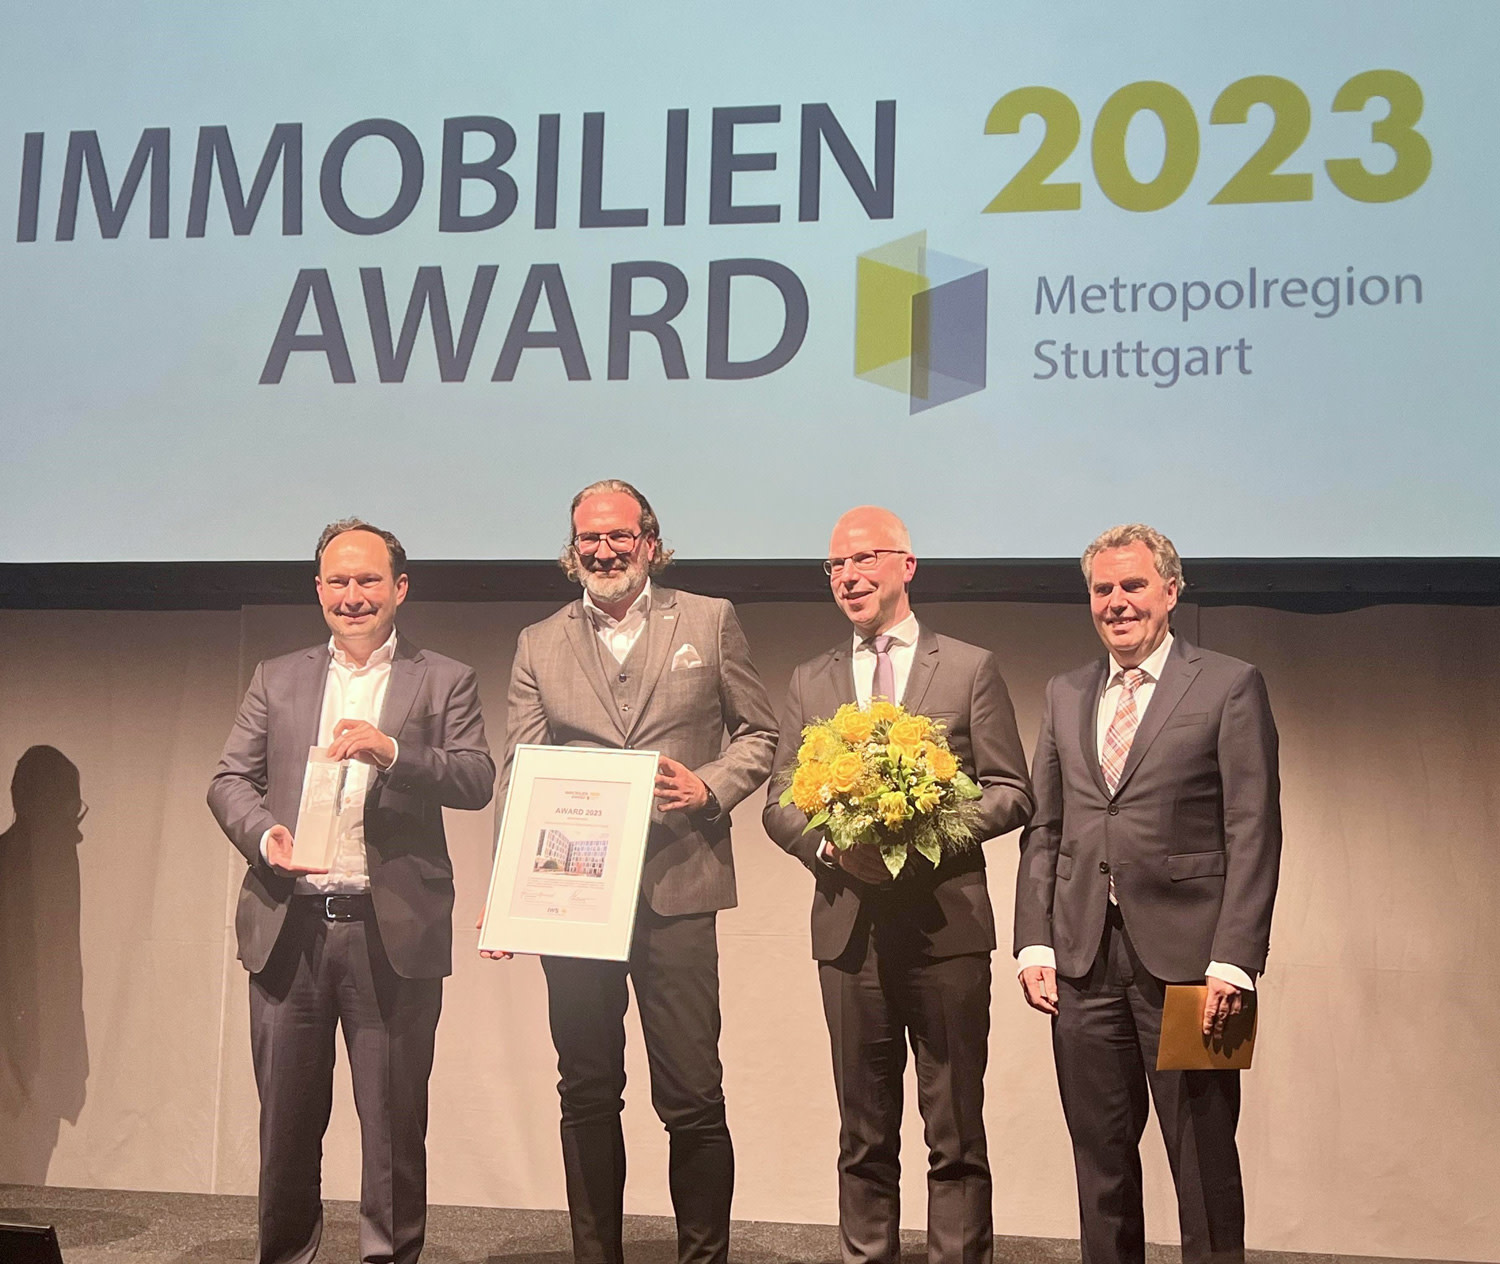 Repräsentanten von SRE und Züblin zeigen Urkunde und ihren Immobilien Award 2023